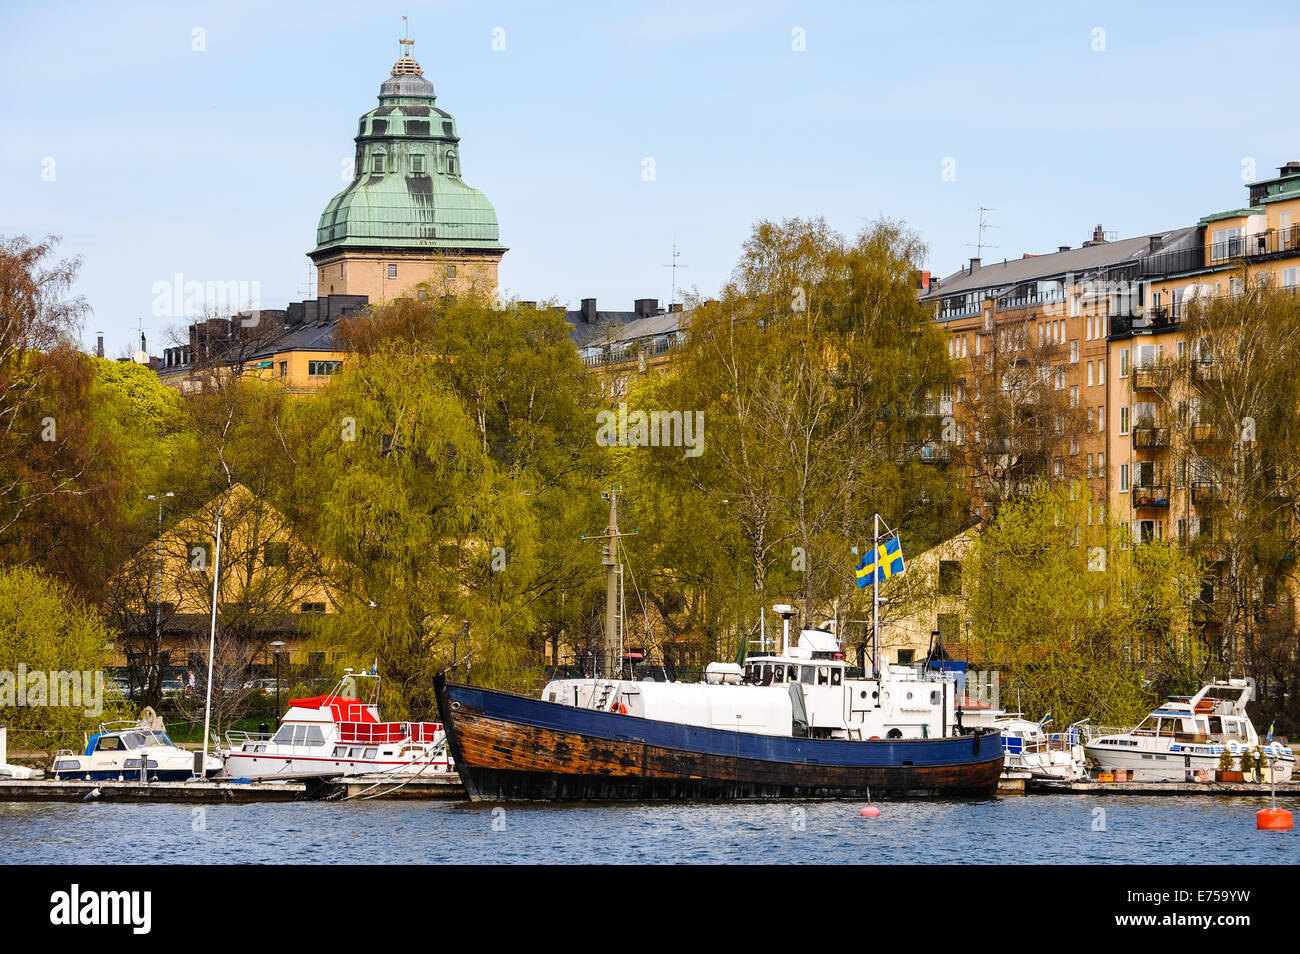 Sweden, Stockholm. Stockholms rådhus. Stock Photo